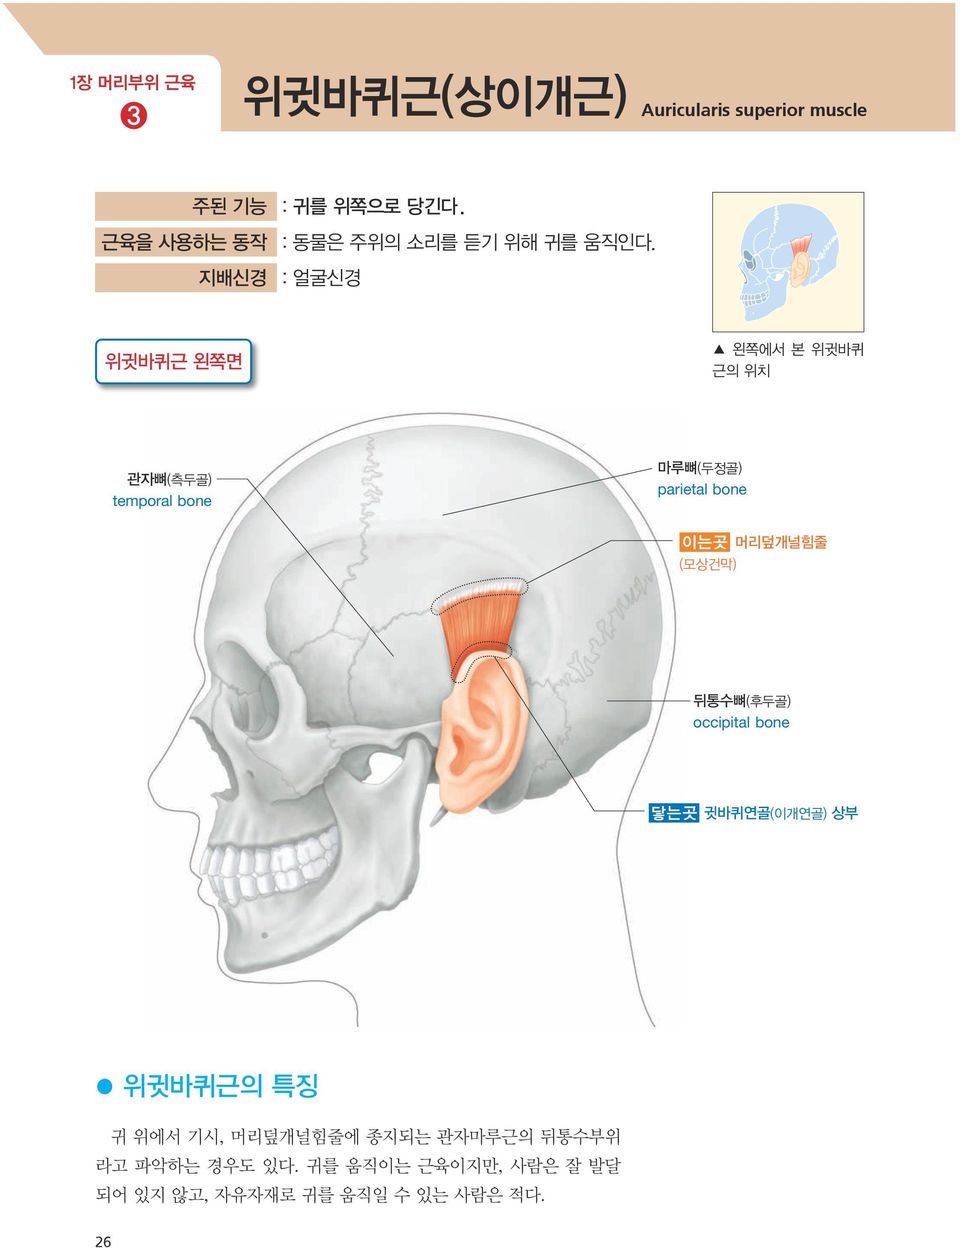 지배신경 : 얼굴신경 위귓바퀴근 왼쪽면 왼쪽에서 본 위귓바퀴 근의 위치 관자뼈(측두골) temporal bone 마루뼈(두정골) parietal bone 이는곳